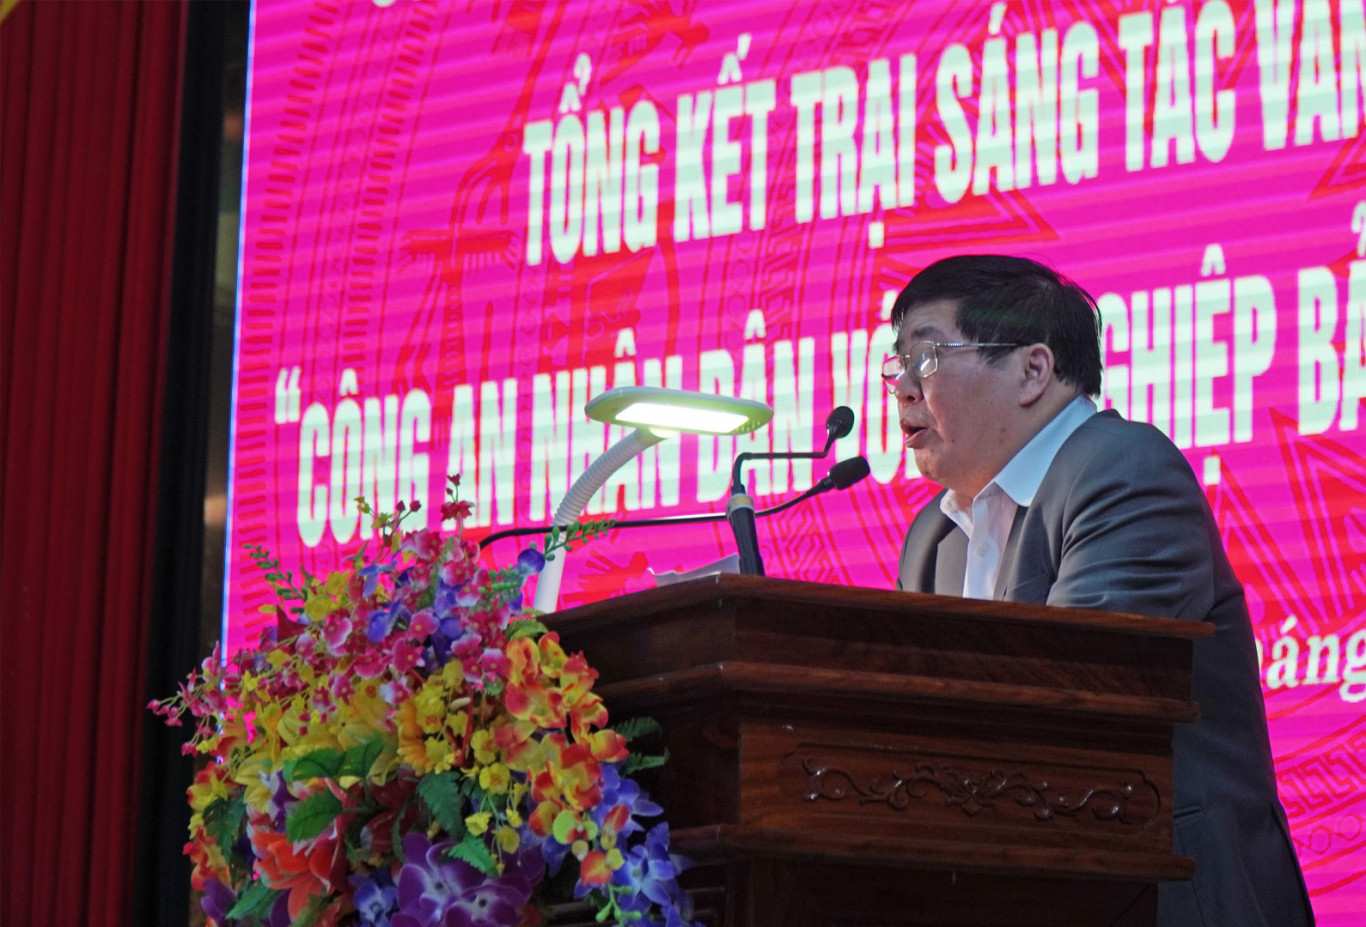 Đồng chí Nguyễn Văn Dùng - Chủ tịch Hội VHNT Quảng Trị báo cáo tổng kết Trại sáng tác